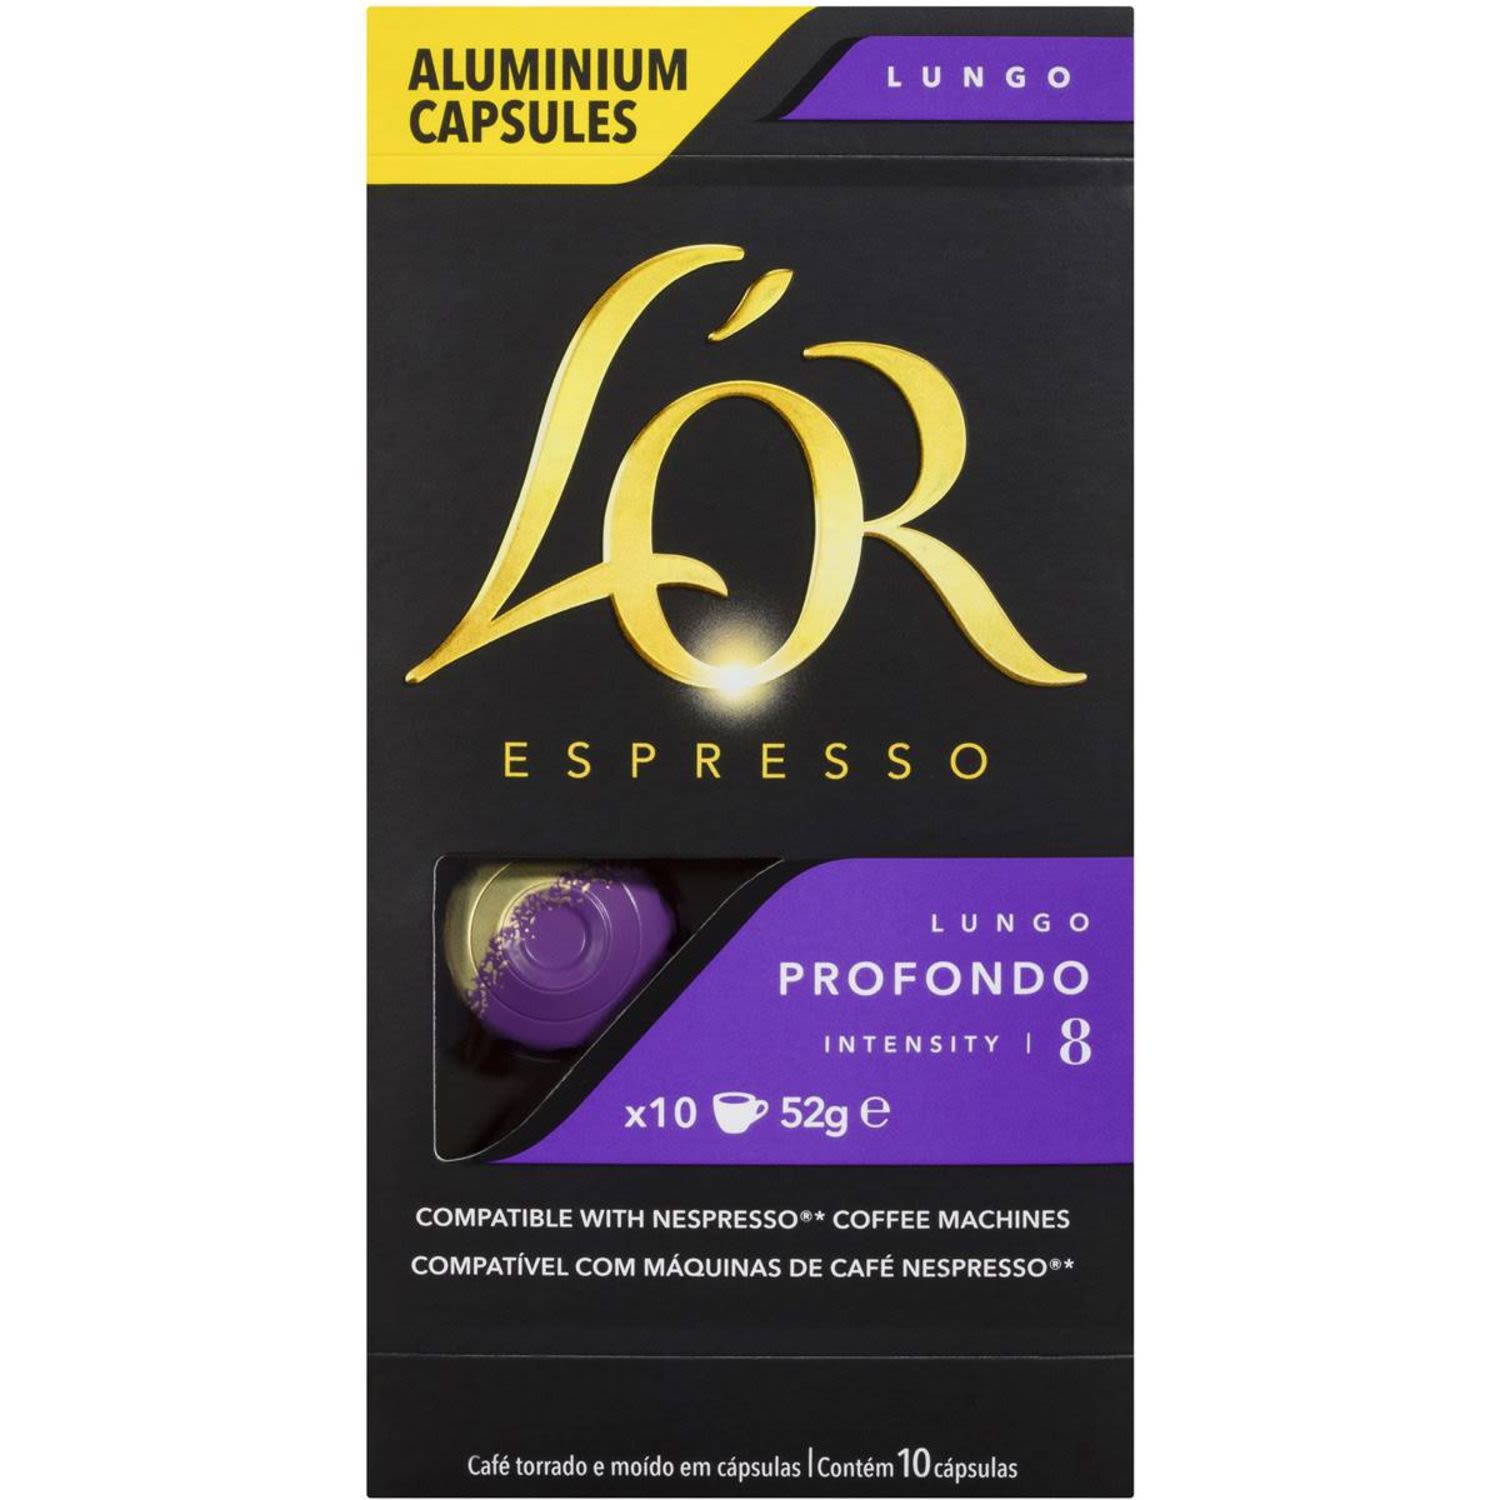 L'OR Espresso Lungo Profondo Coffee Capsules, 10 Each